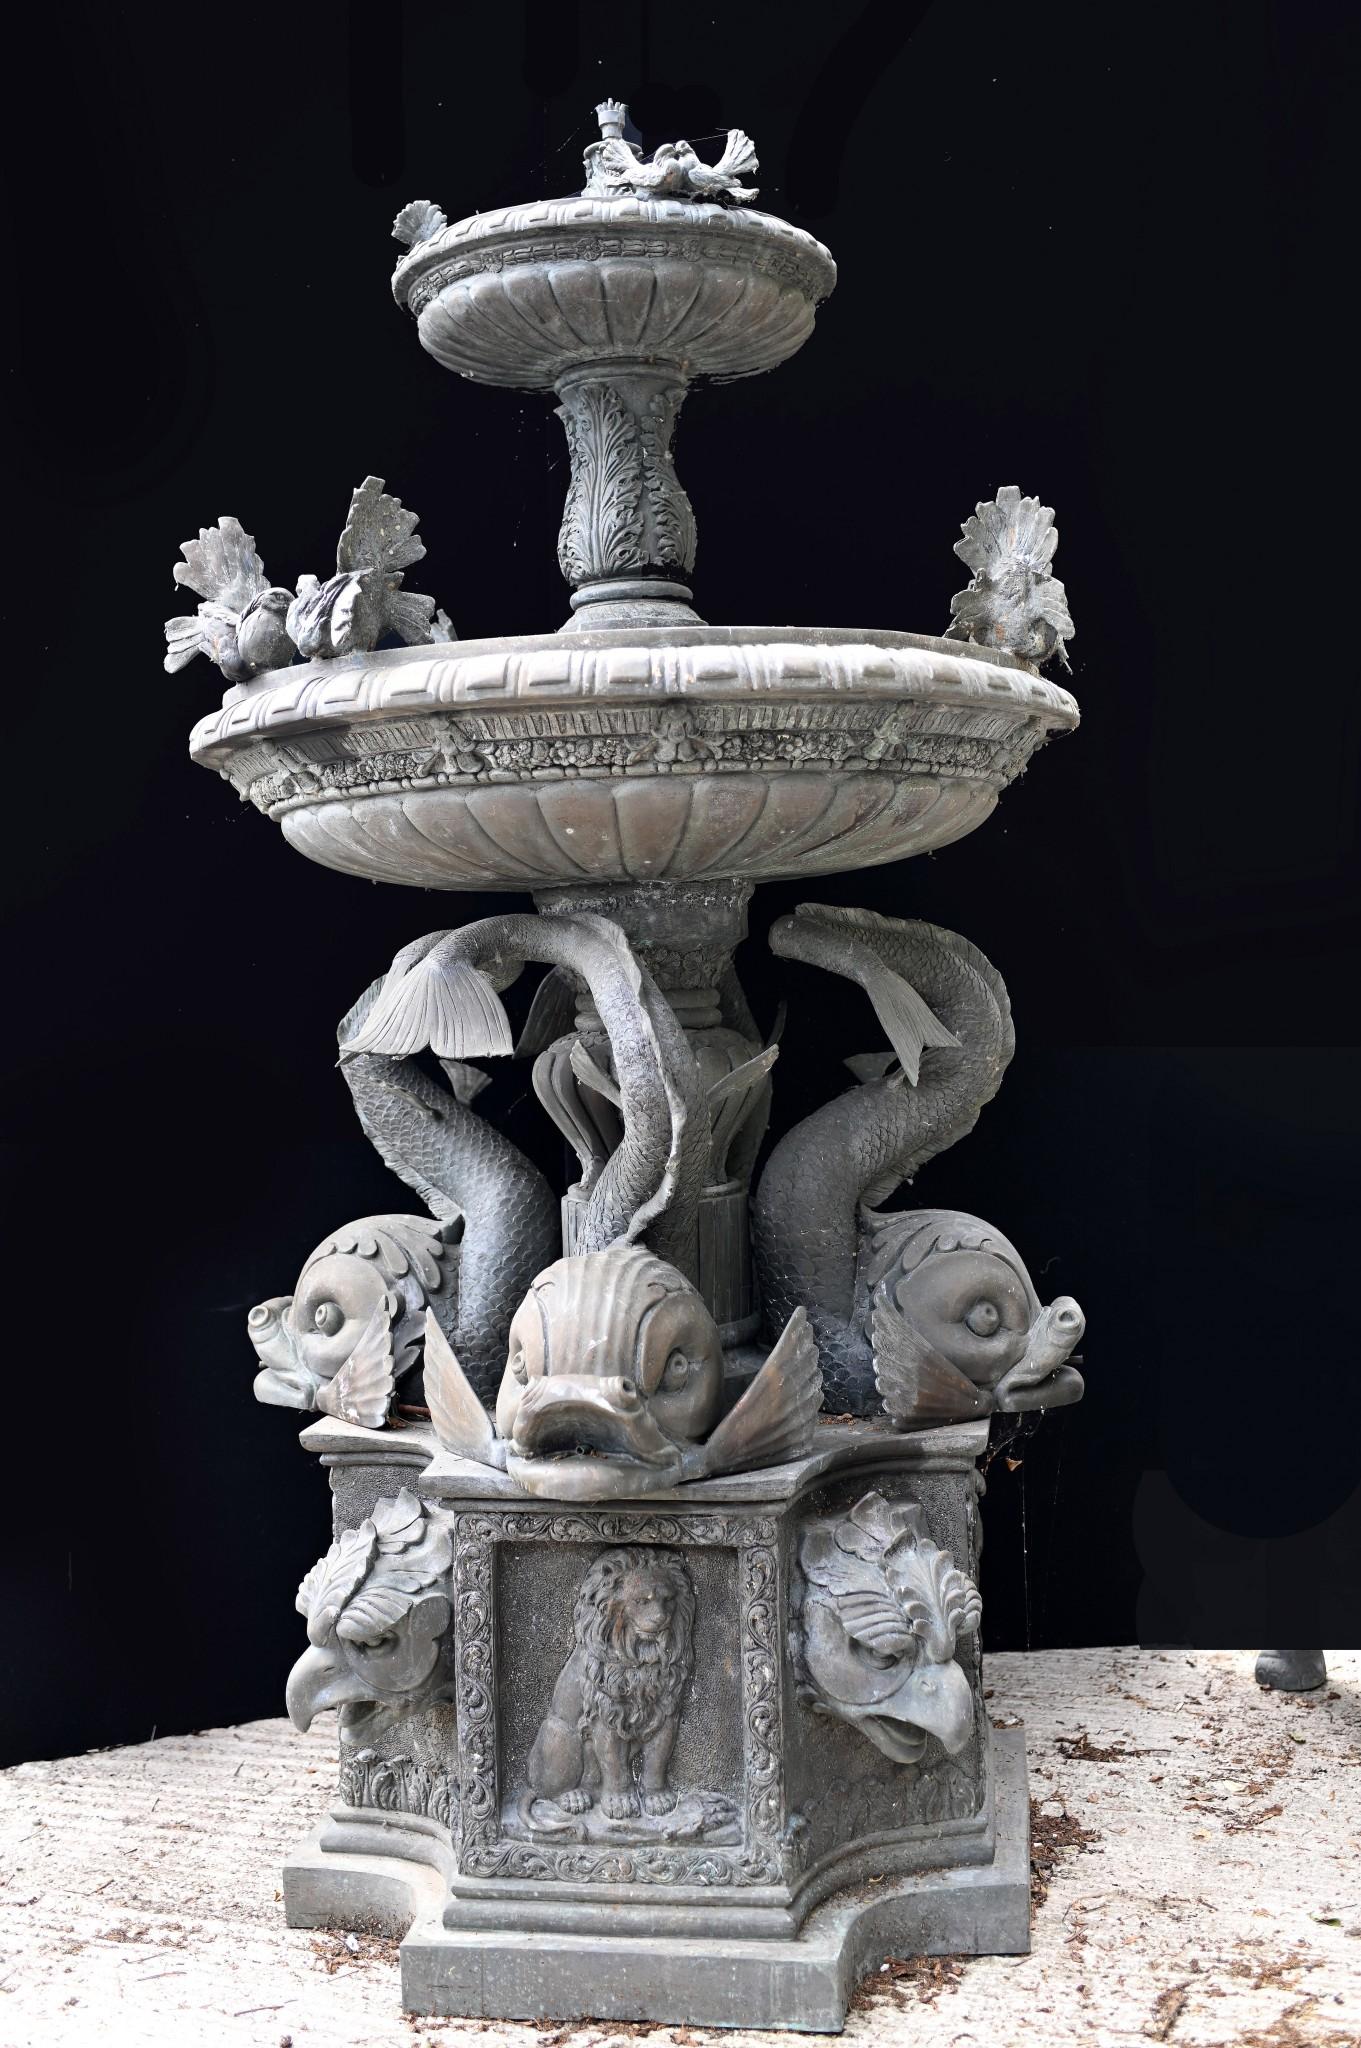 Superbe fontaine de jardin antique italienne en bronze
Grand ouvrage de beauté classique avec une colonne principale soutenue par des serpents de mer
On pense qu'il a été récupéré dans une ville près de Townes en Italie.
Deux niveaux de fontaine